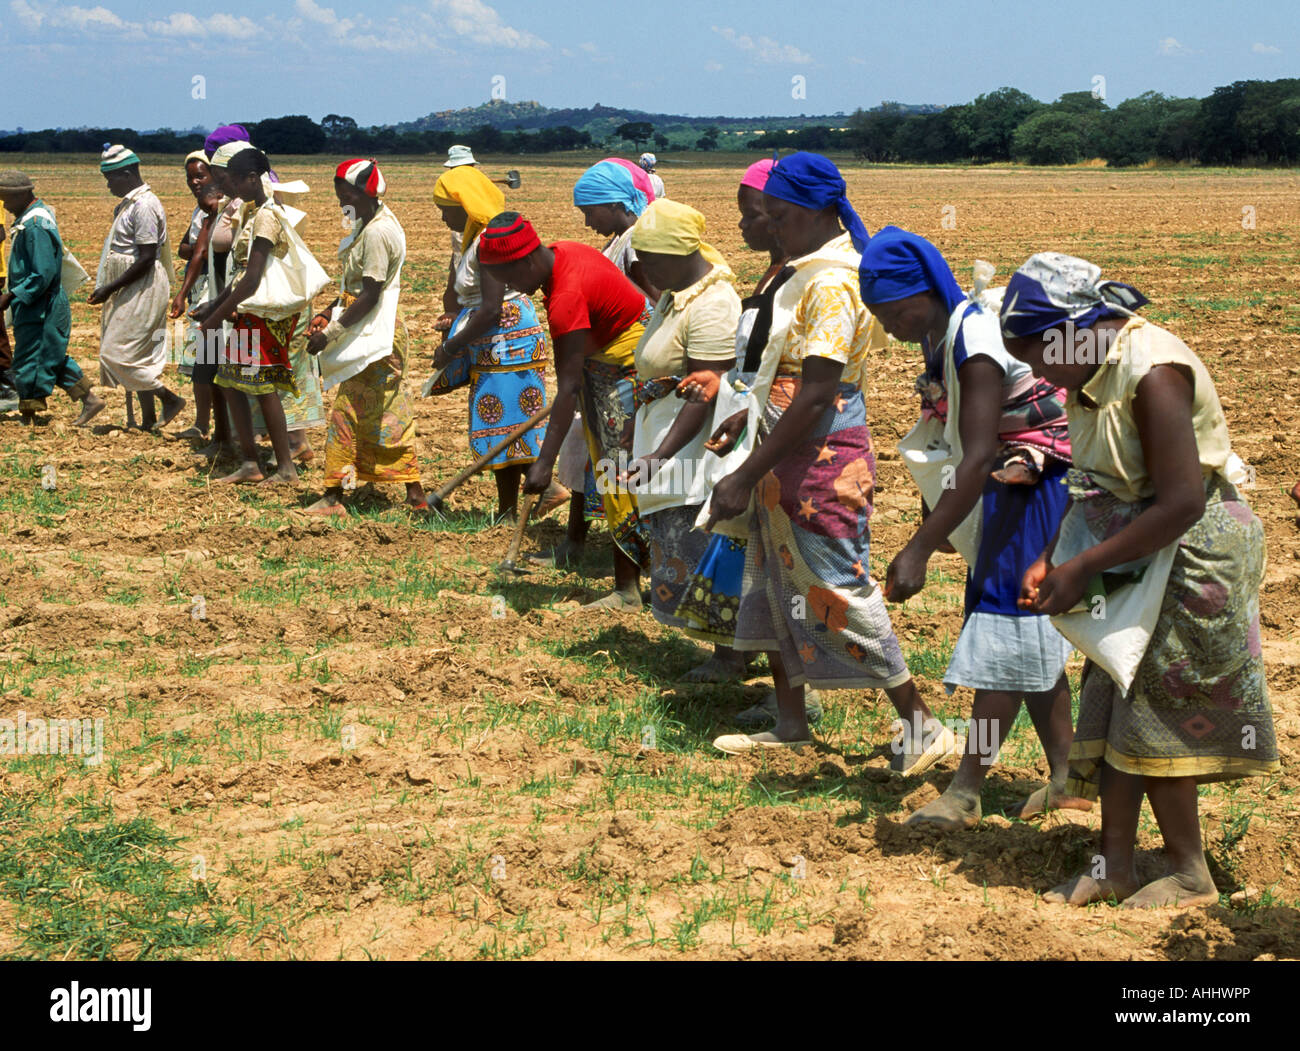 Rangée de femmes africaines habillées de couleurs vives planter du maïs au Zimbabwe Banque D'Images